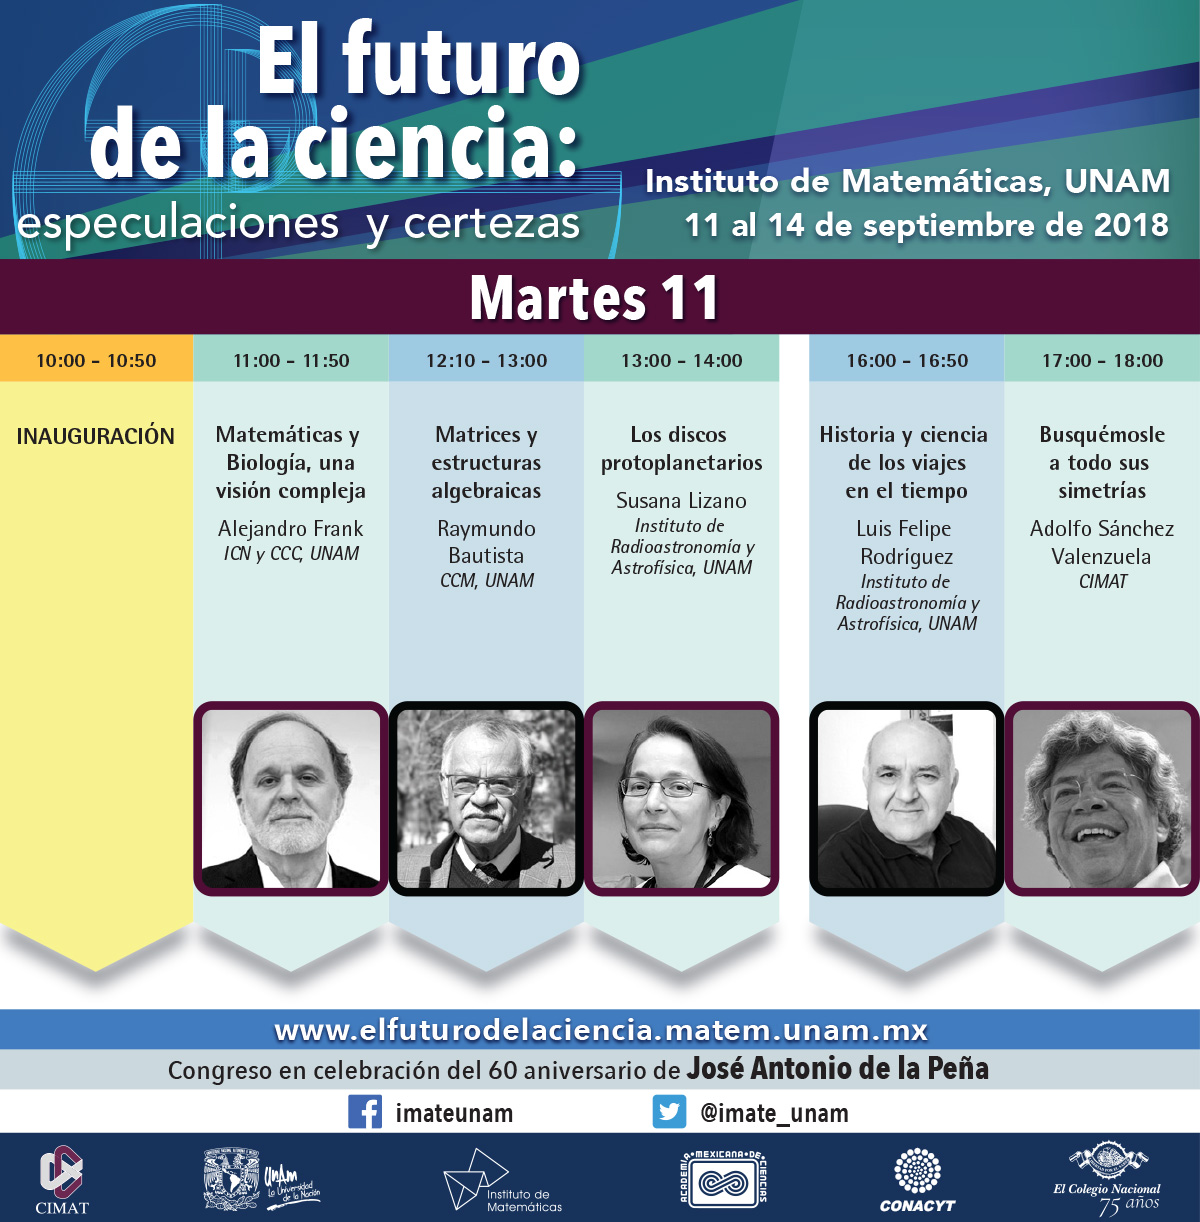 Programa de actividades del "El futuro de la ciencia: especulaciones y certezas"